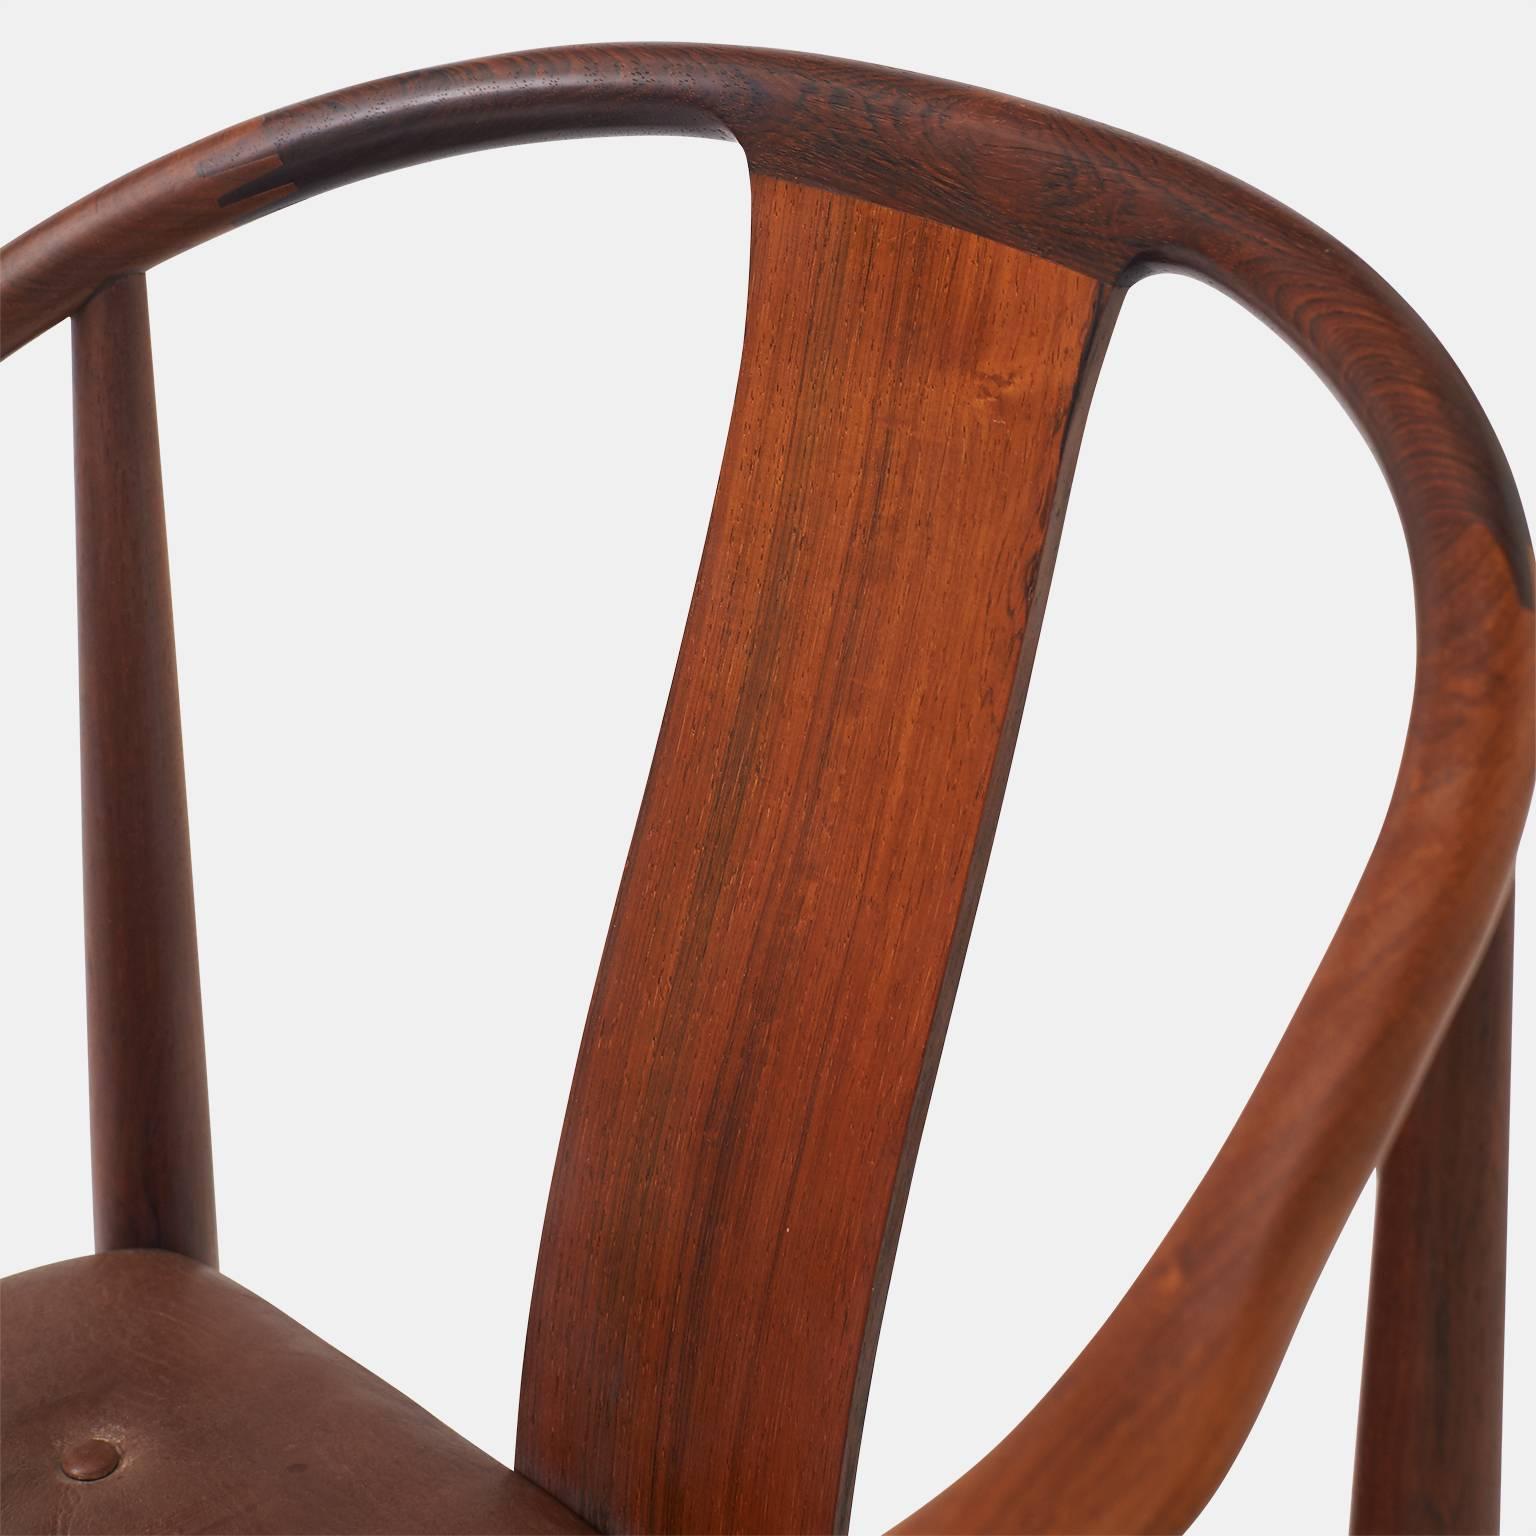 Danish Pair of “China” Chairs by Hans J Wegner